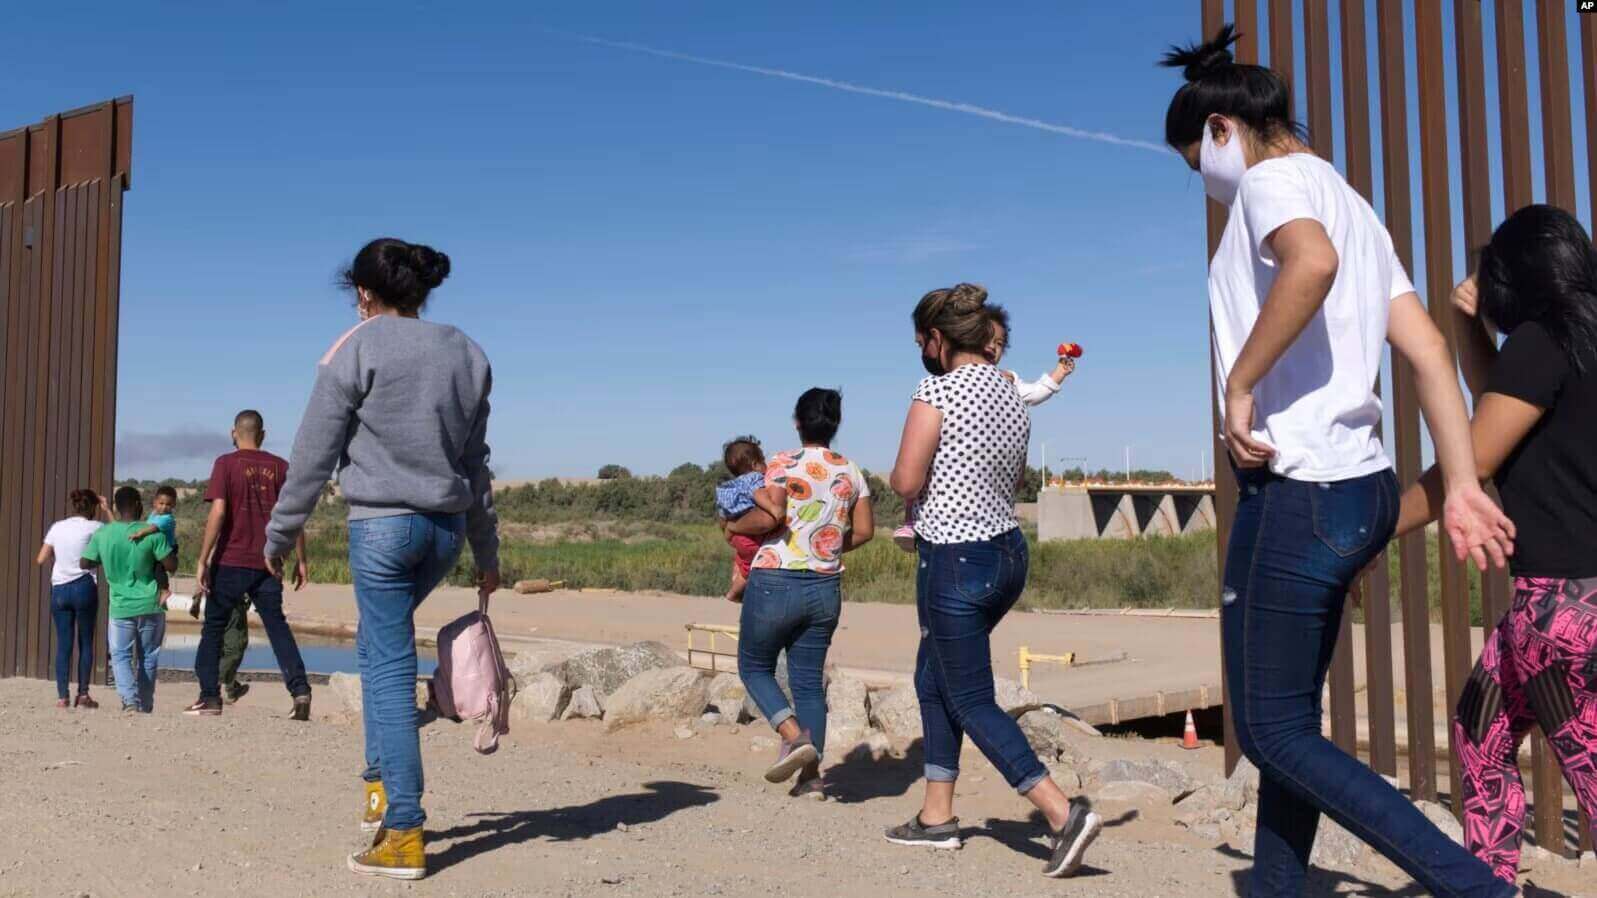 ARCHIVO - Un grupo de migrantes brasileños ingresan a Estados Unidos desde México por una brecha del muro fronterizo, en Yuma, Arizona, con el fin de solicitar asilo a las autoridades migratorias estadounidenses, el 8 de junio de 2021